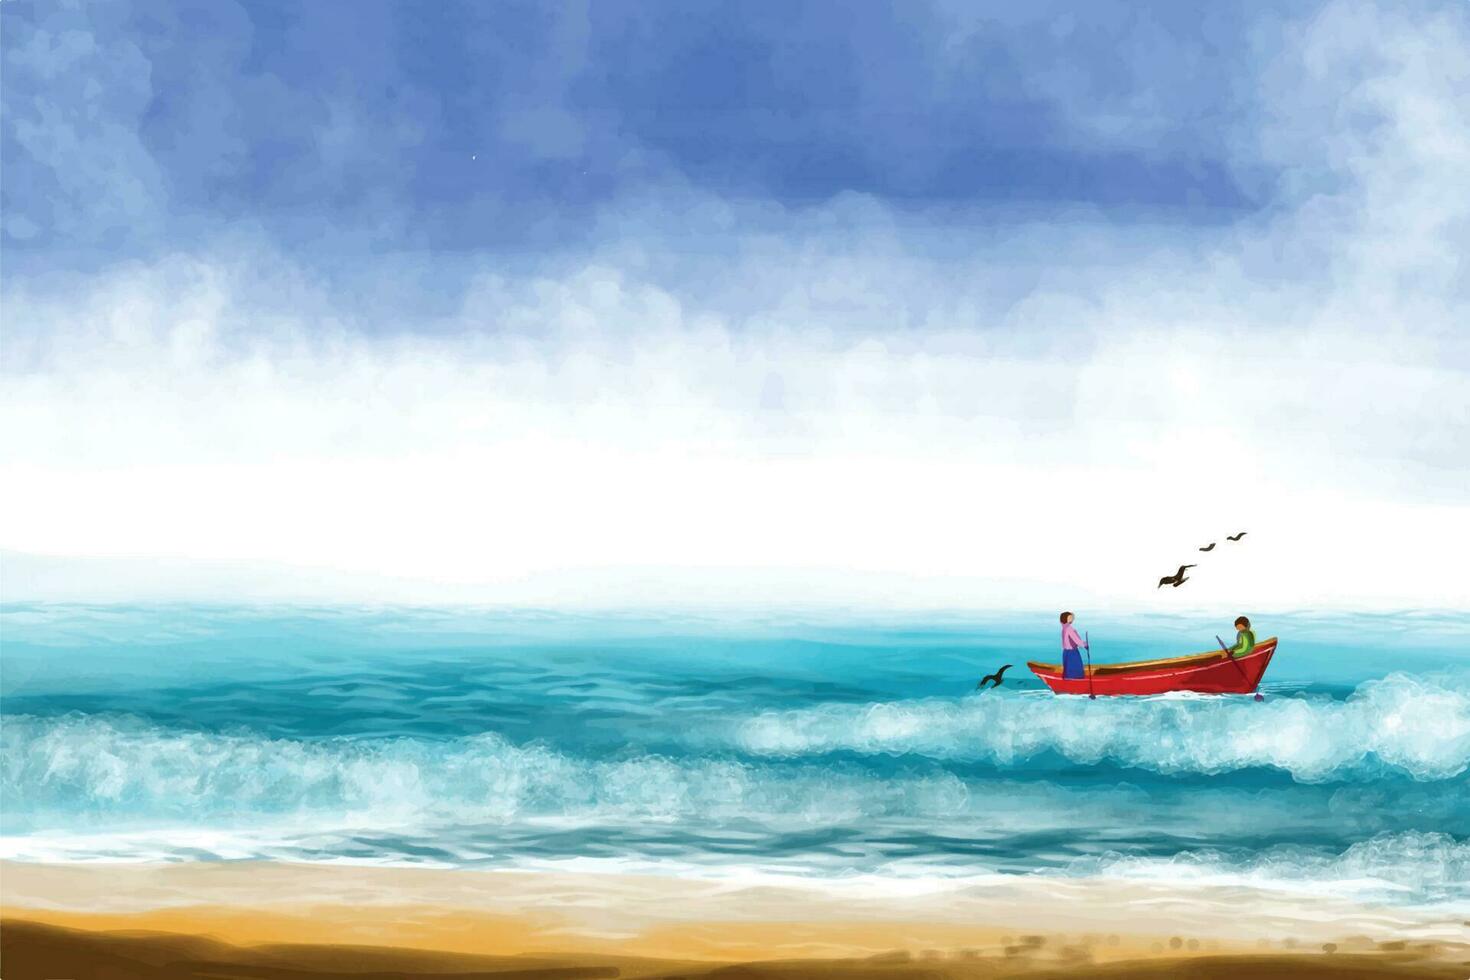 mare onde mondo oceano giorno sfondo illustrazione vettore